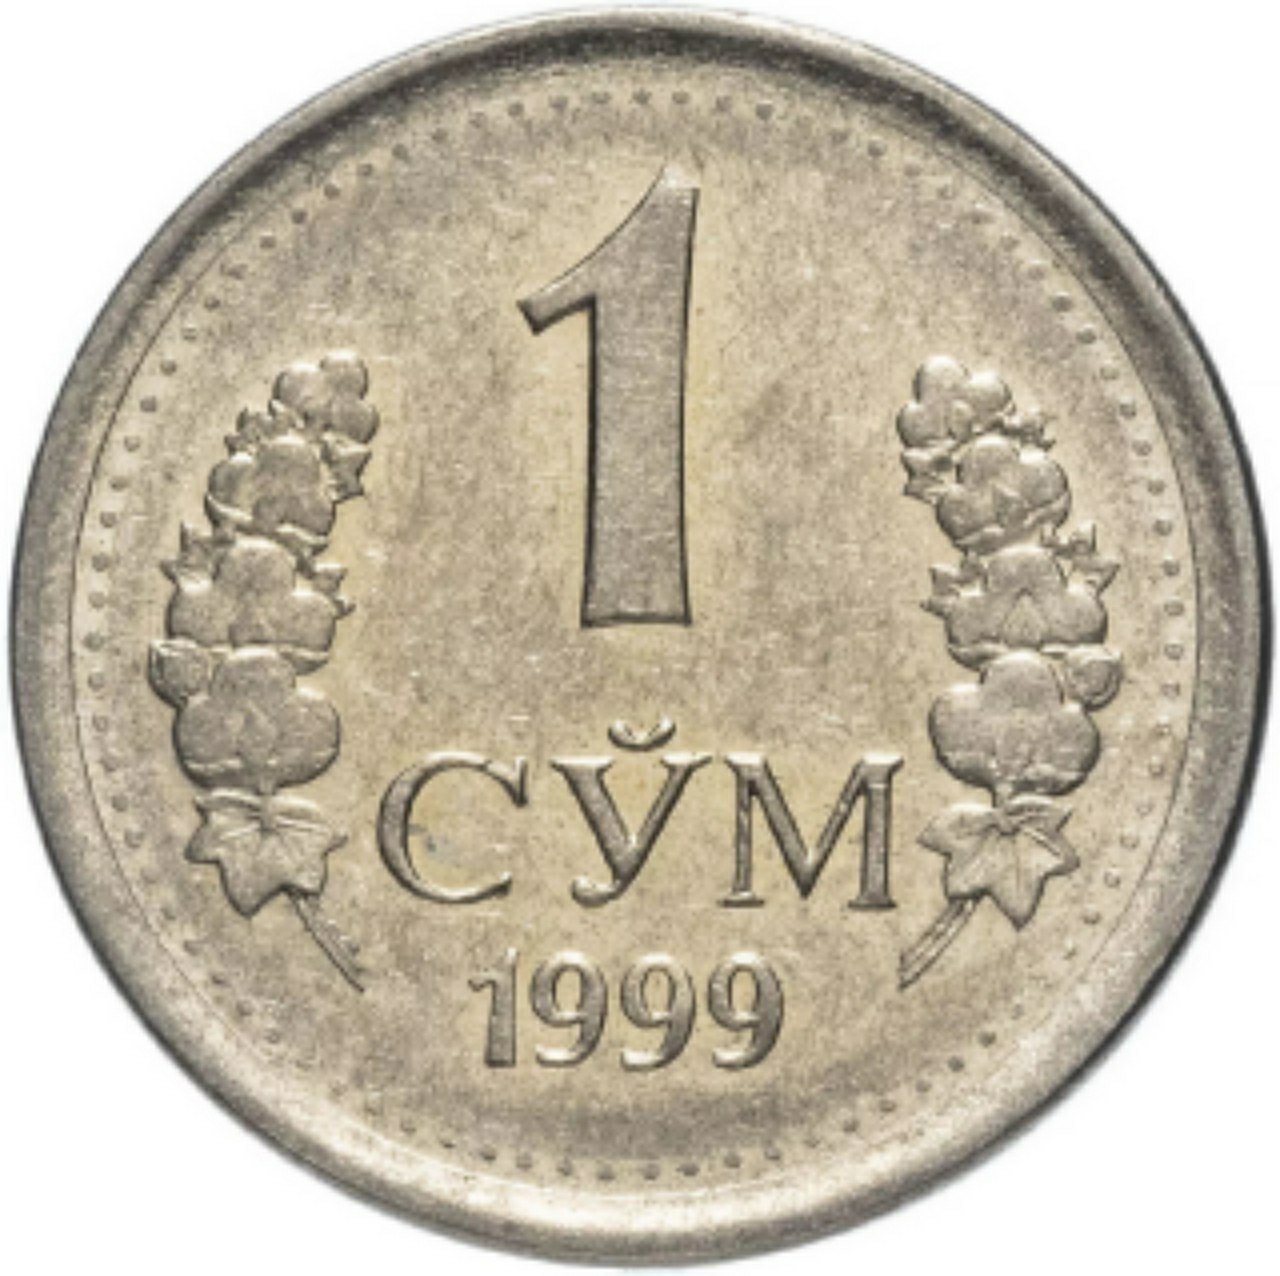 1 сумм узбекский. 1 Сум монета. Узбекский сум монеты. Монеты Узбекистана сум. Монета Узбекистана 1.